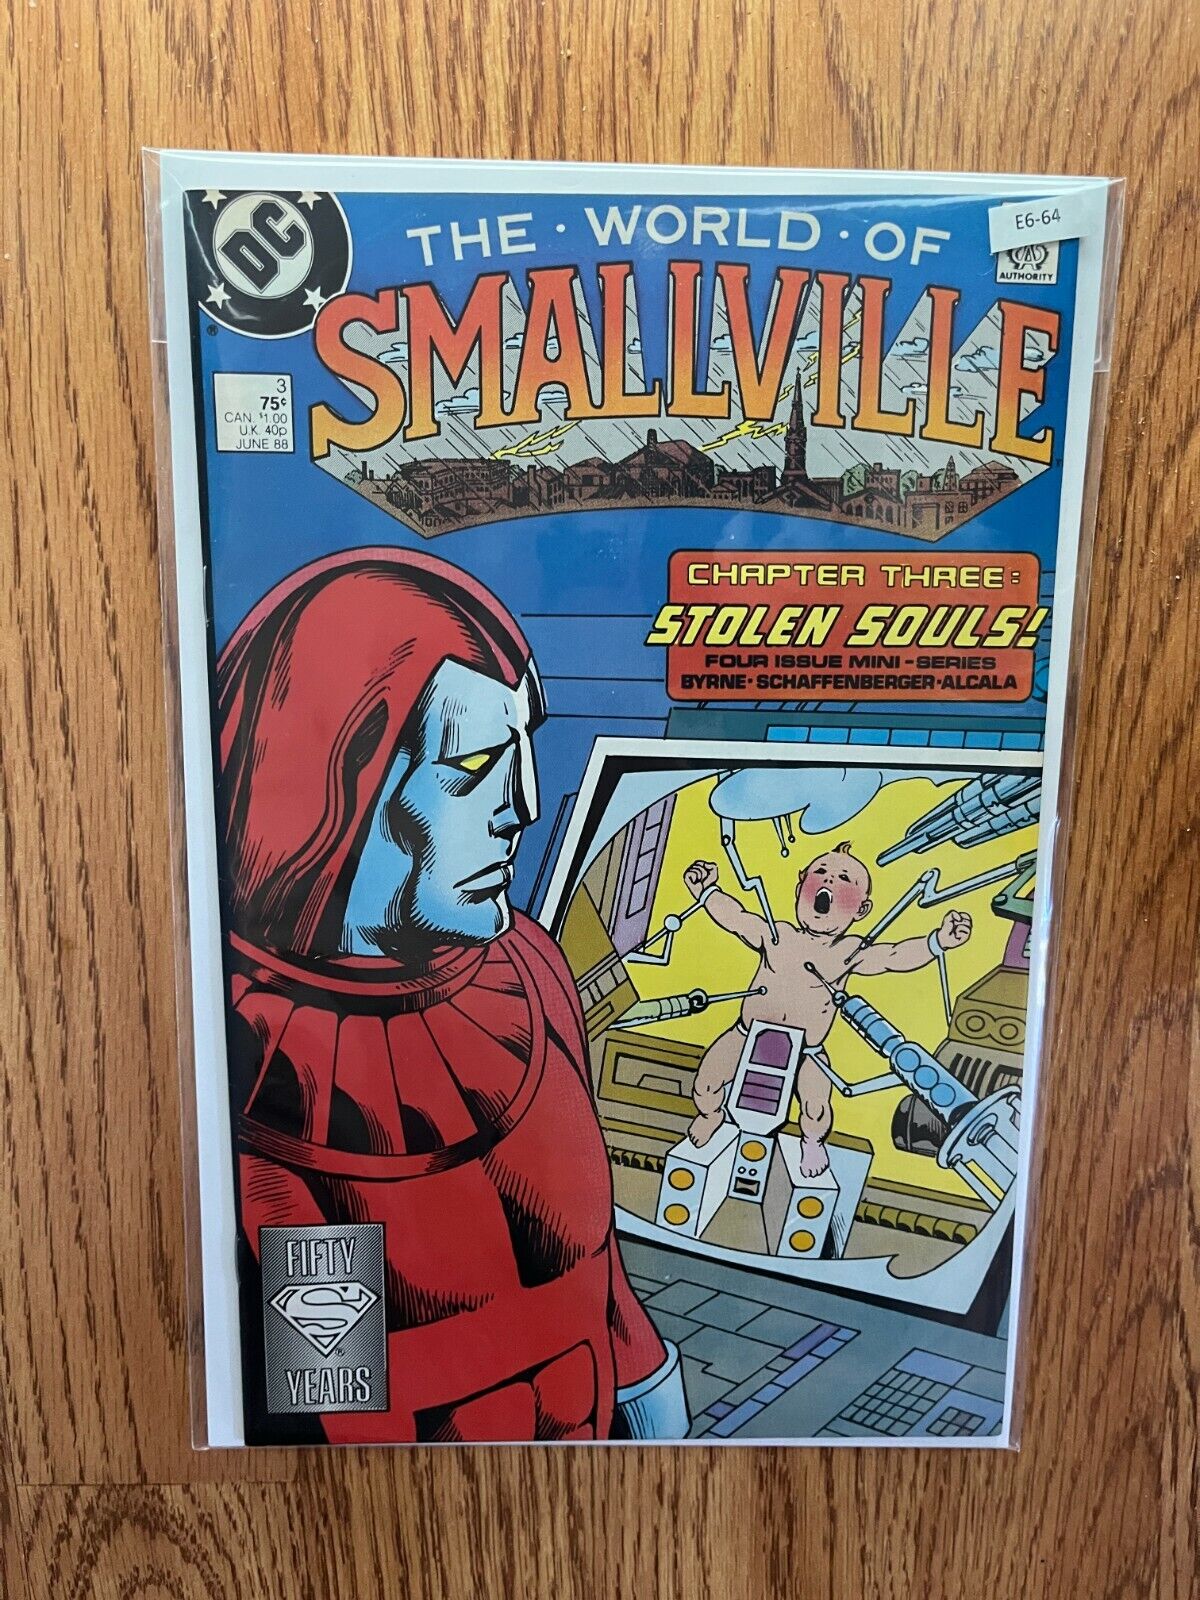 The World Of Smallville 3 - DC Comics Comic Book - E6-64